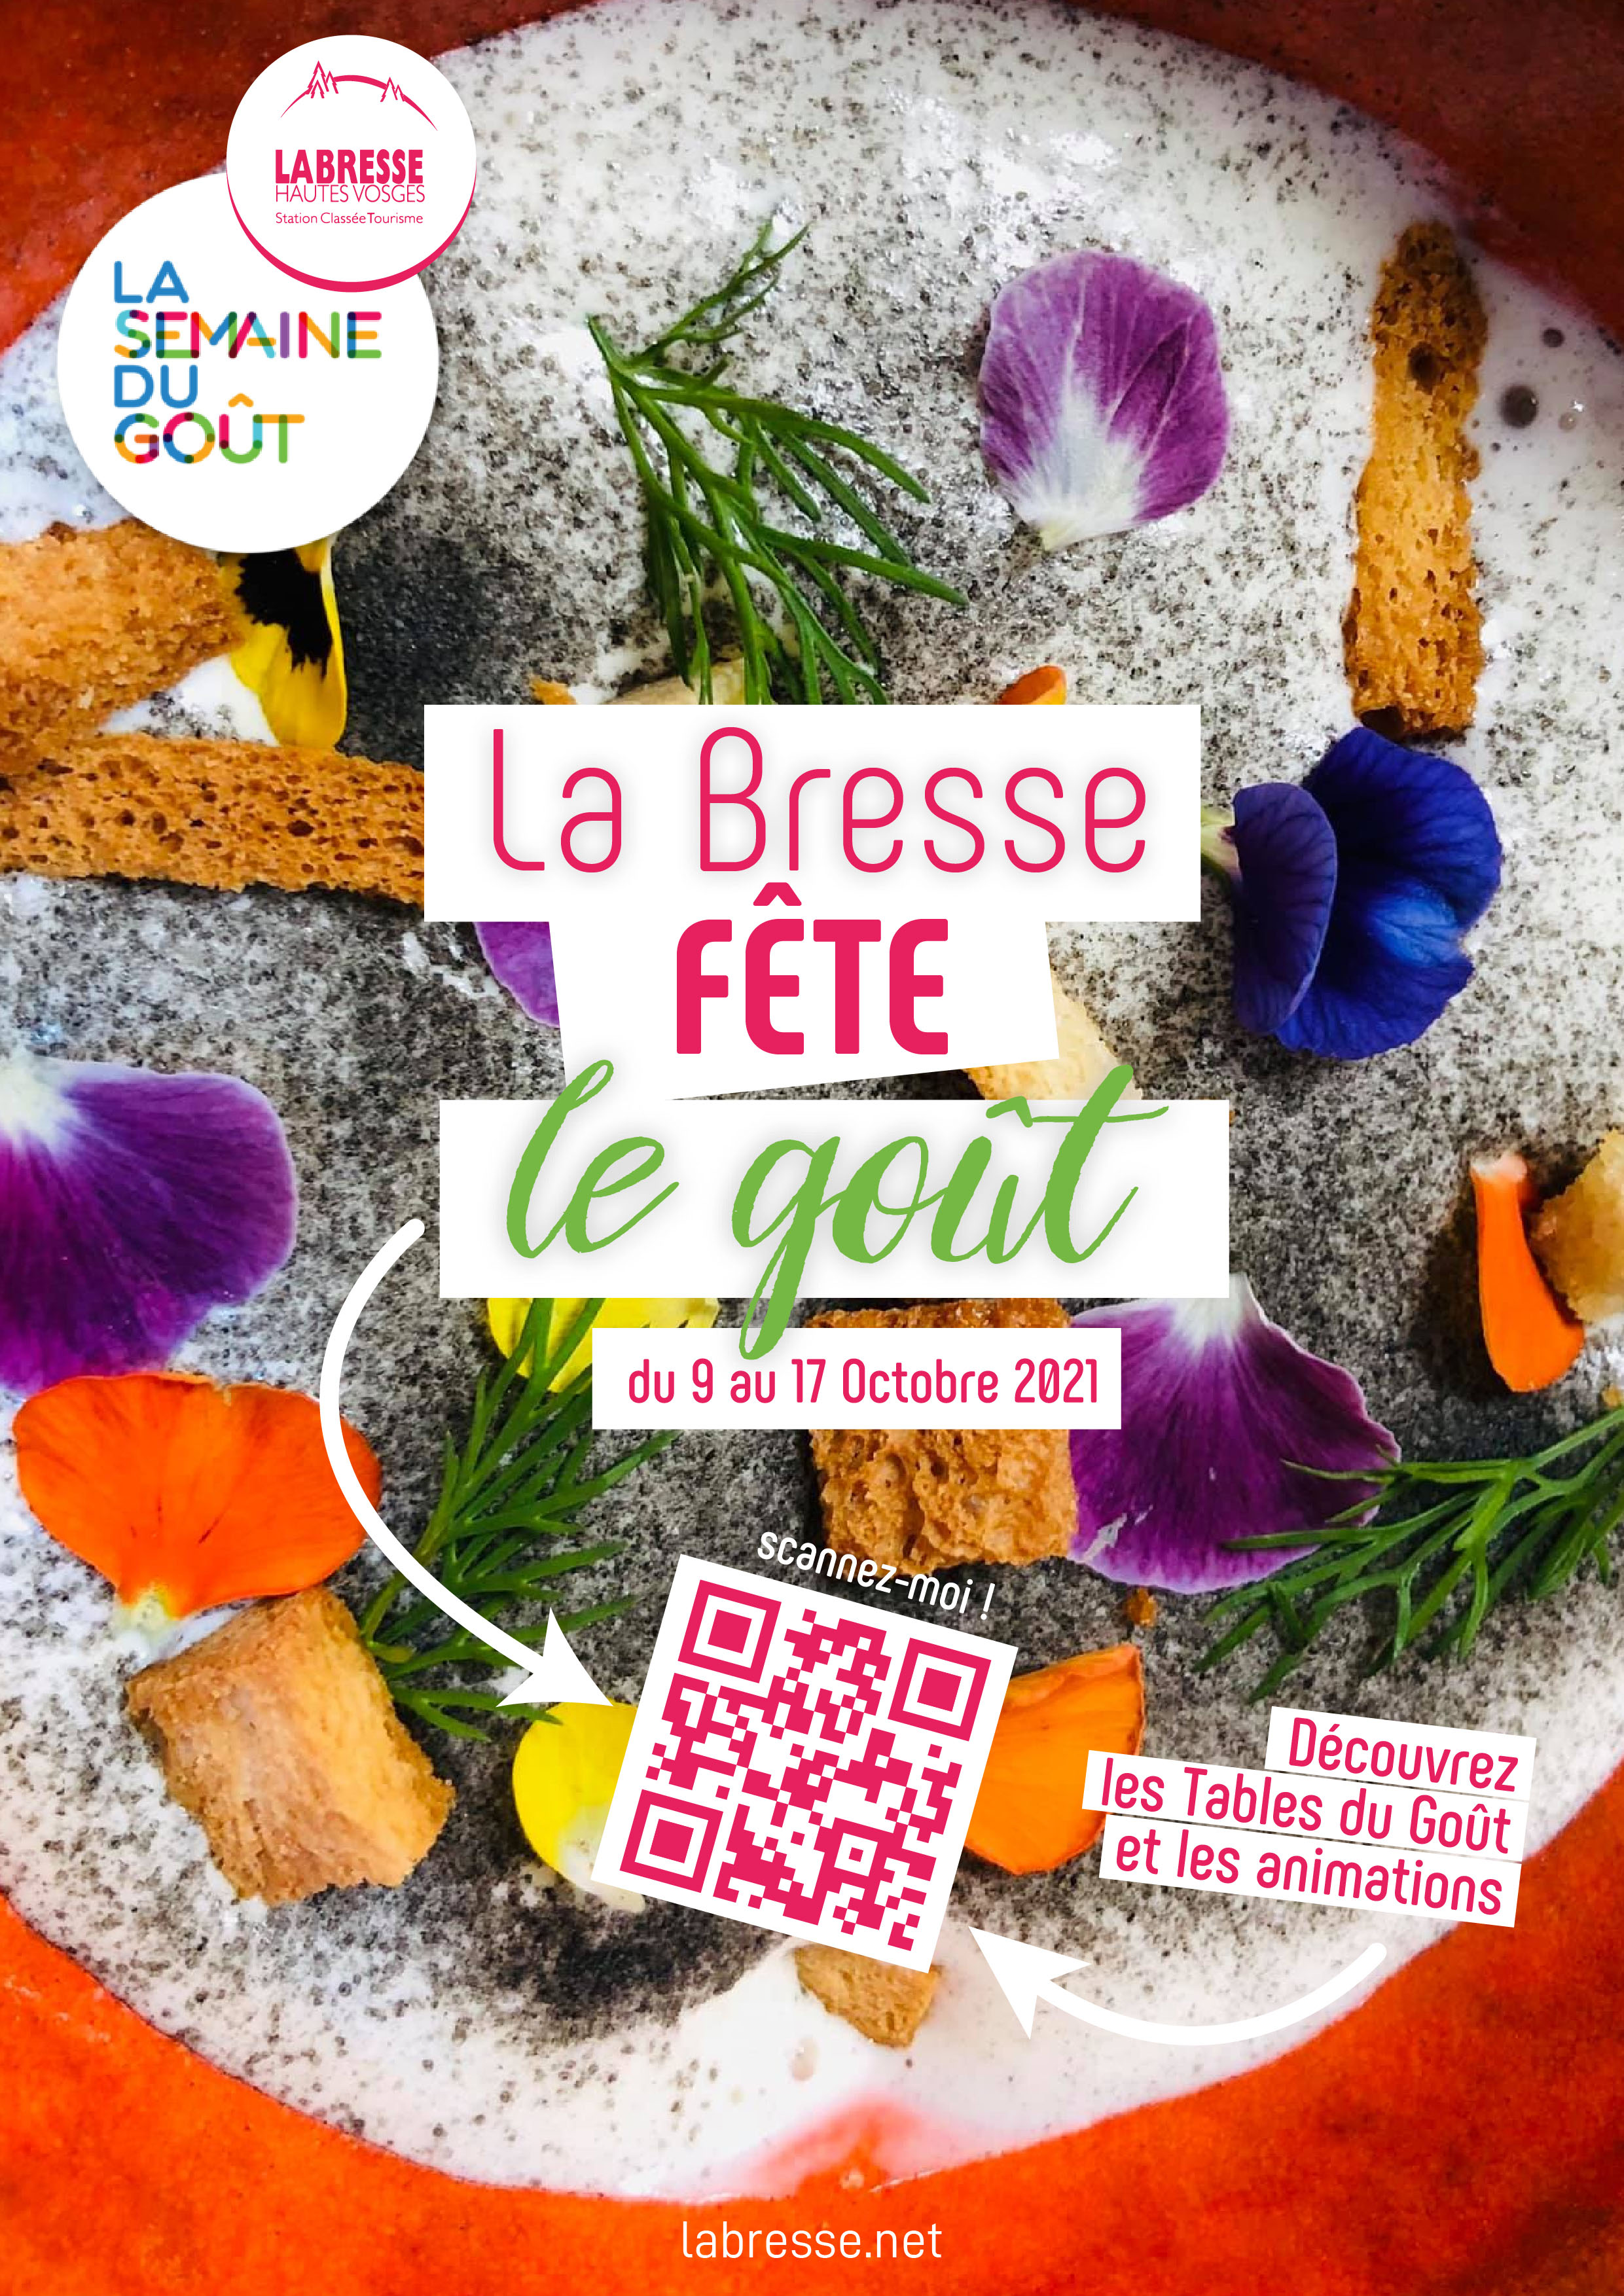 La Bresse fêtera le goût du 9 au 17 octobre prochain.